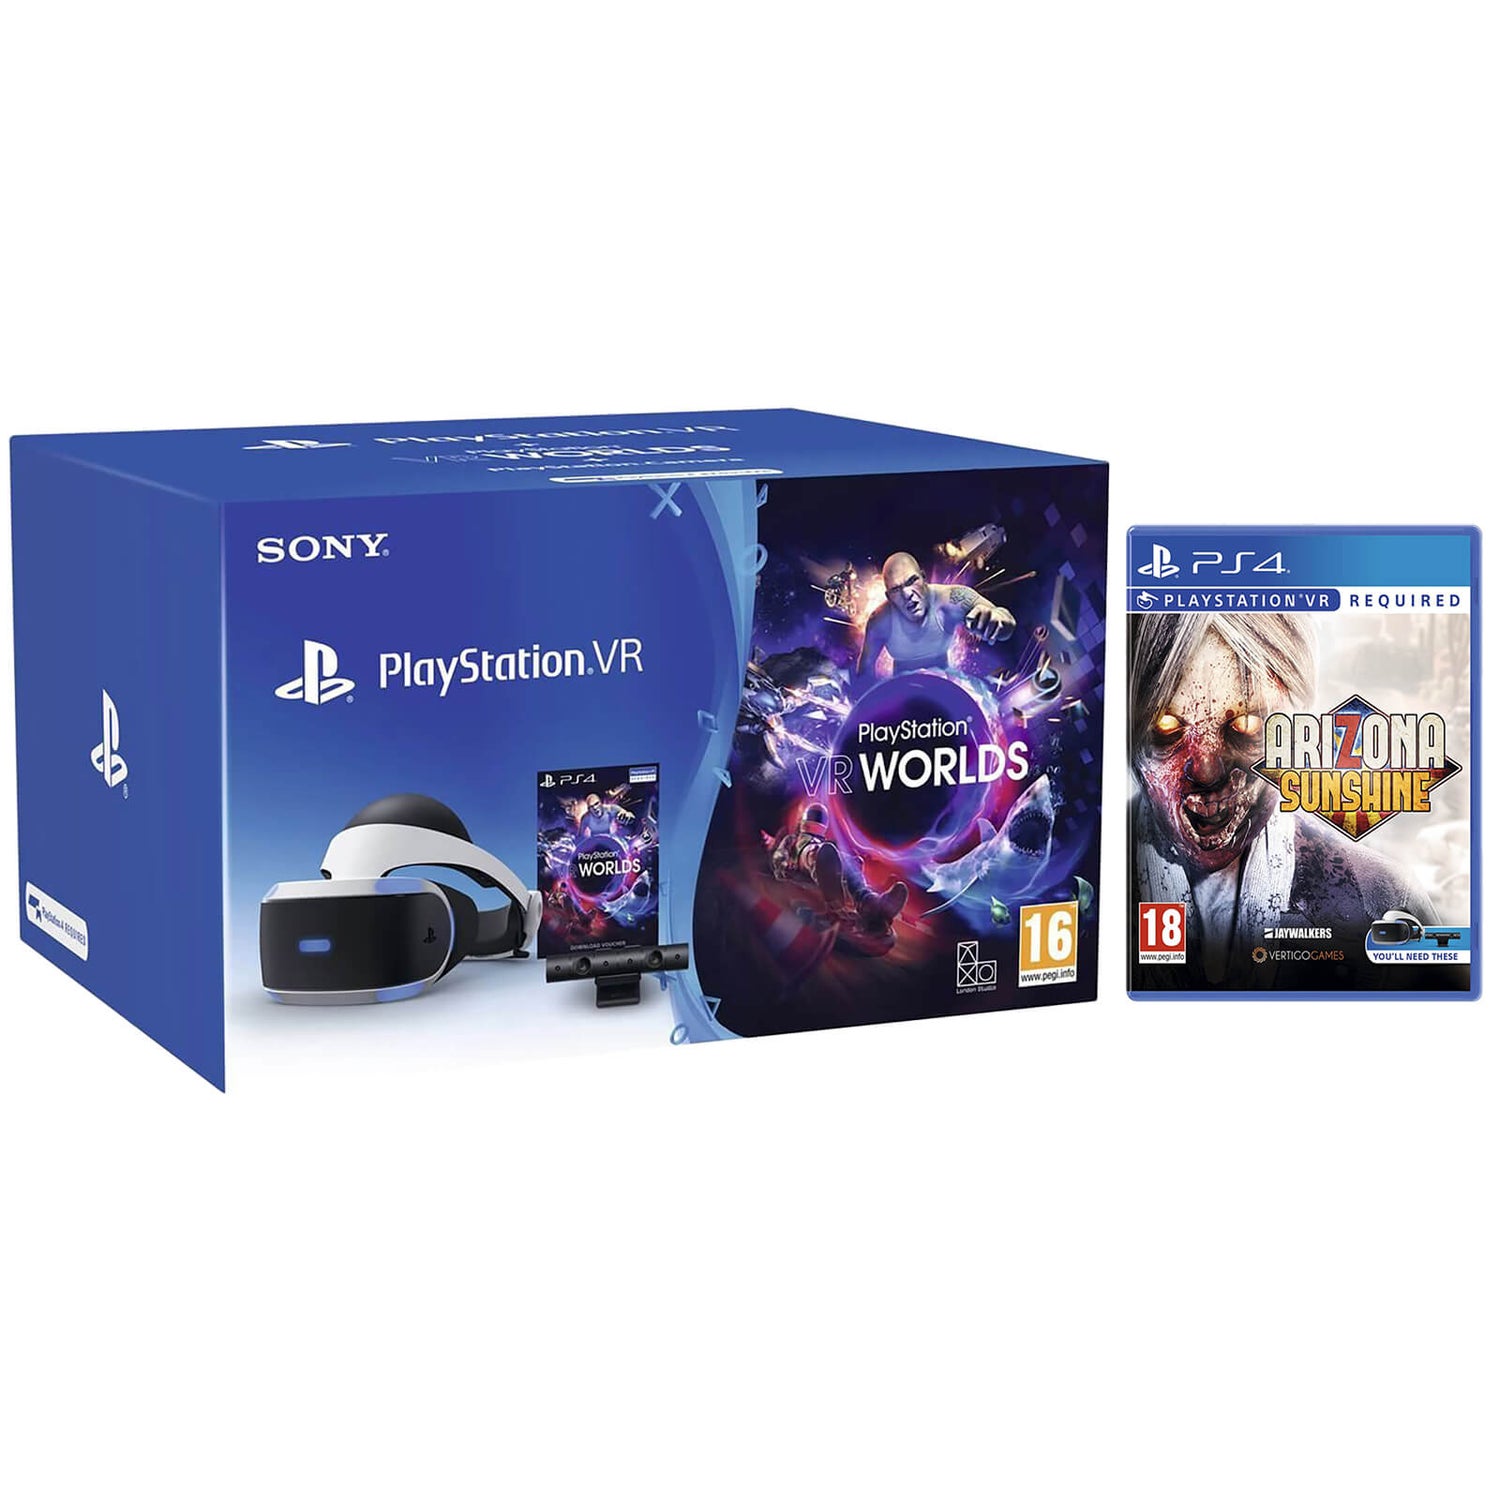 Afslag følelsesmæssig have på Sony Playstation VR Starter Kit including Playstation Worlds & Arizona  Sunshine Games Consoles - Zavvi UK